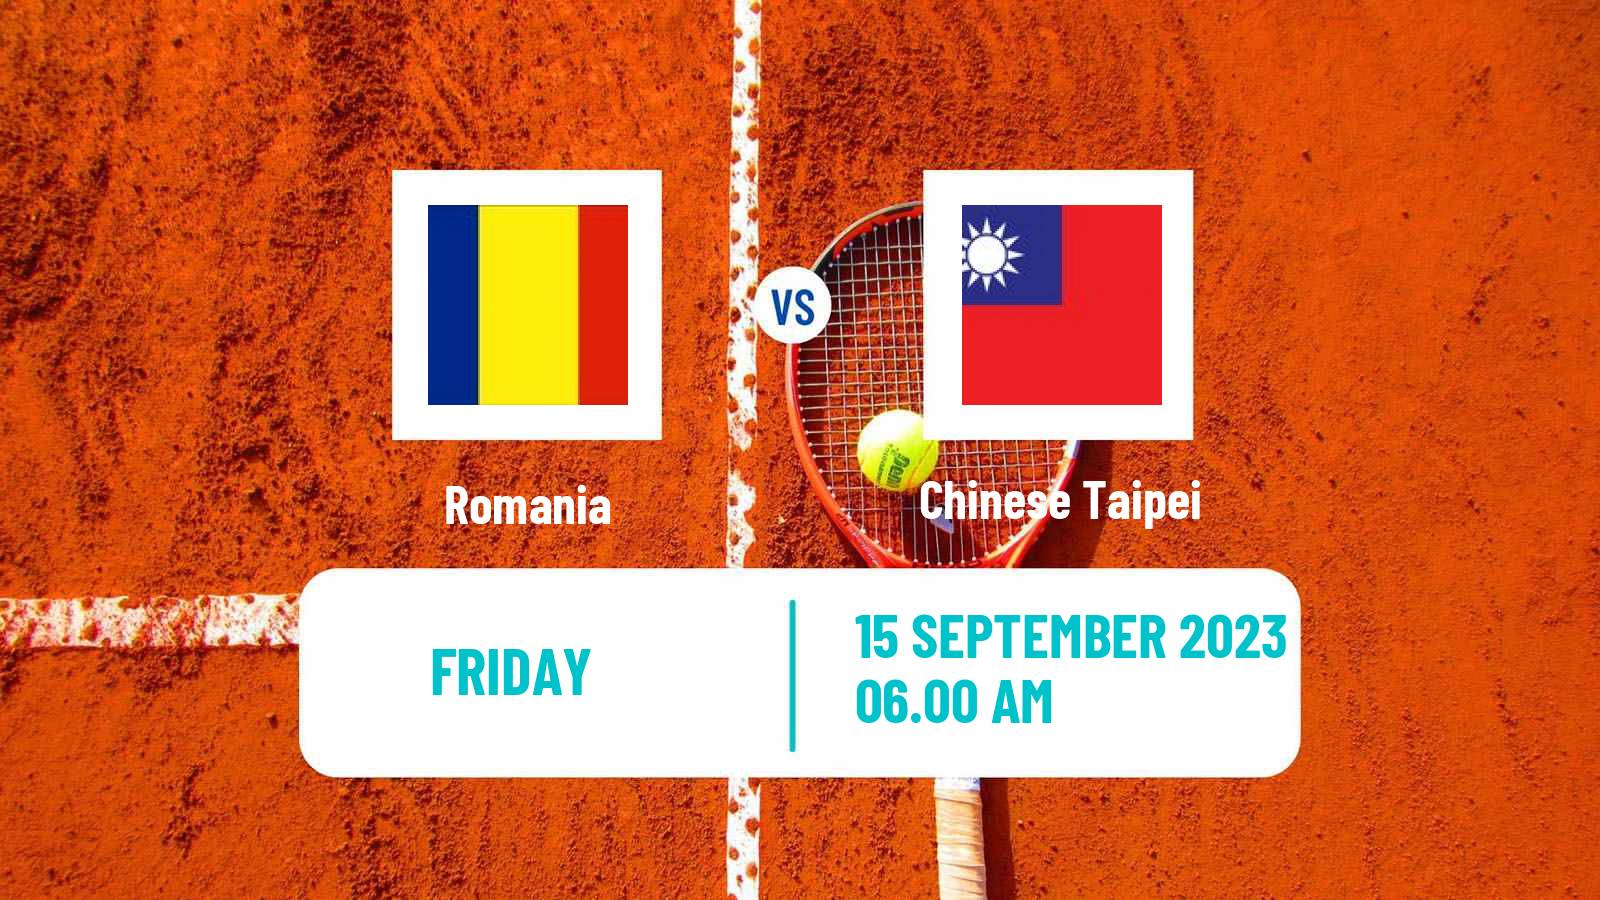 Tennis Davis Cup World Group I Teams Romania - Chinese Taipei